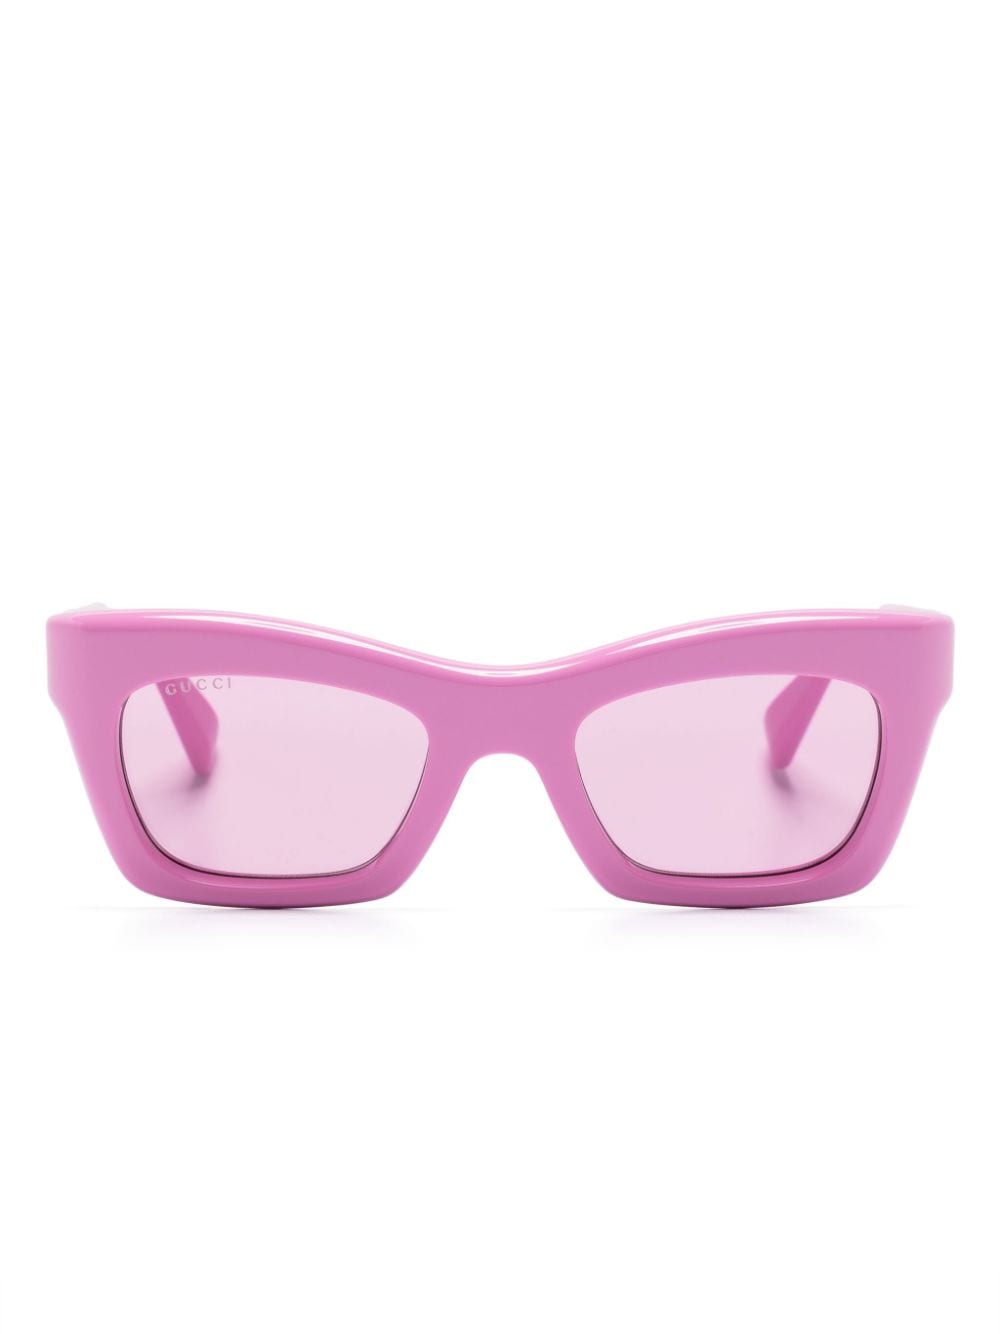 Gucci Eyewear Sonnenbrille mit eckigem Gestell - Rosa von Gucci Eyewear